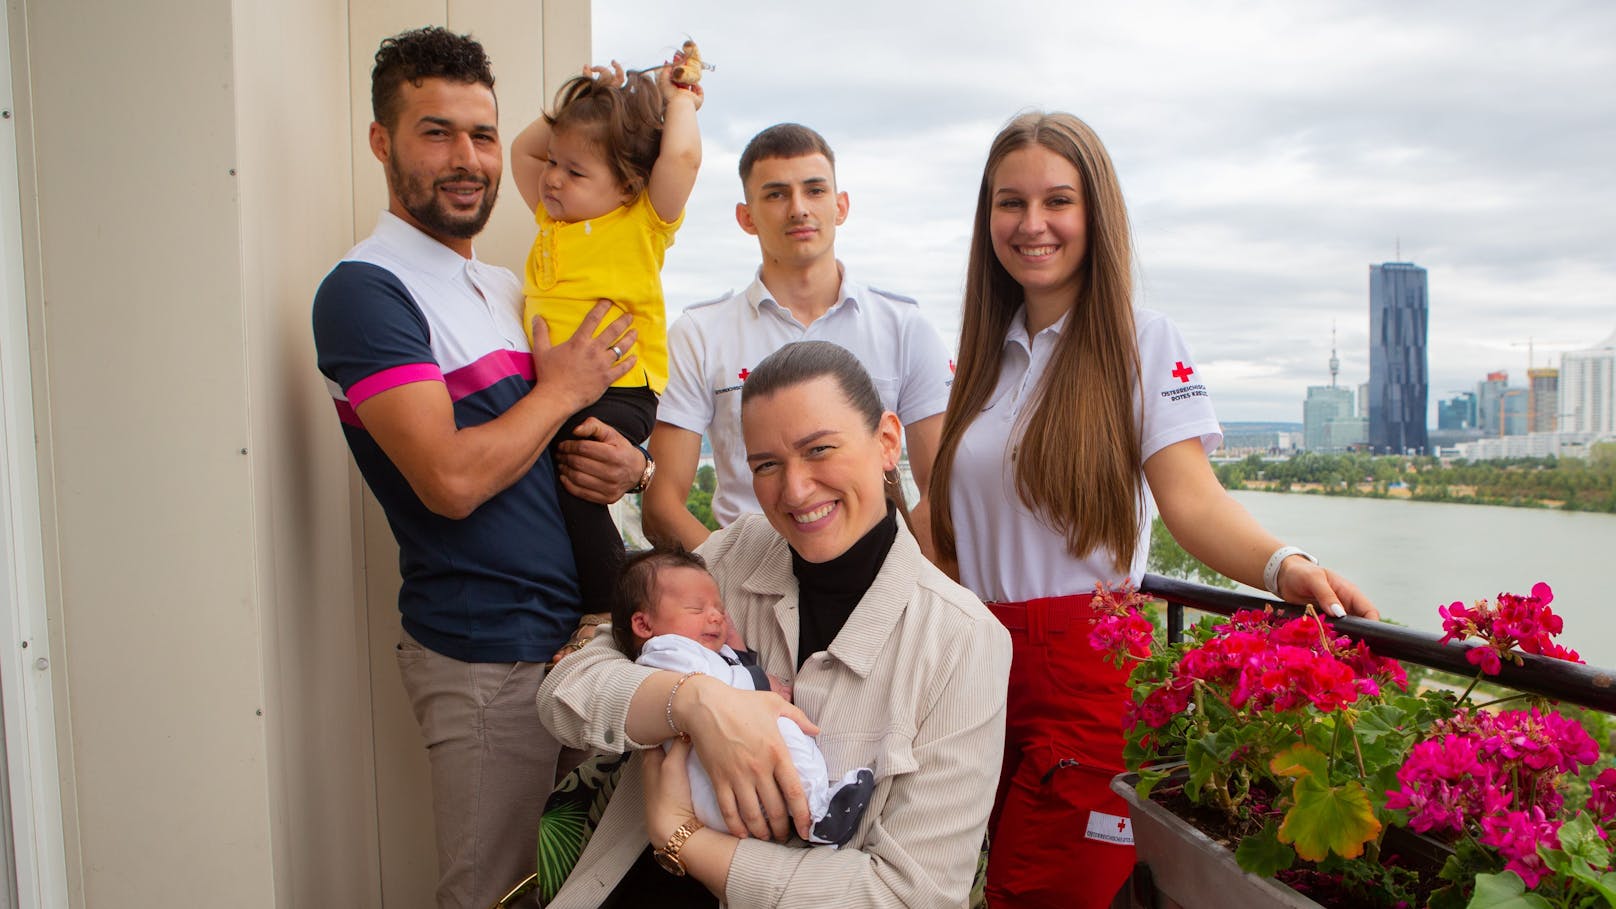 Seit Kurzem ist die Familie zu viert: Sohn Elsayed kam überraschend bei einer ungeplanten Wohnungsgeburt zur Welt. Dabei geholfen haben Daniel und Vivienne vom Wiener Roten Kreuz.